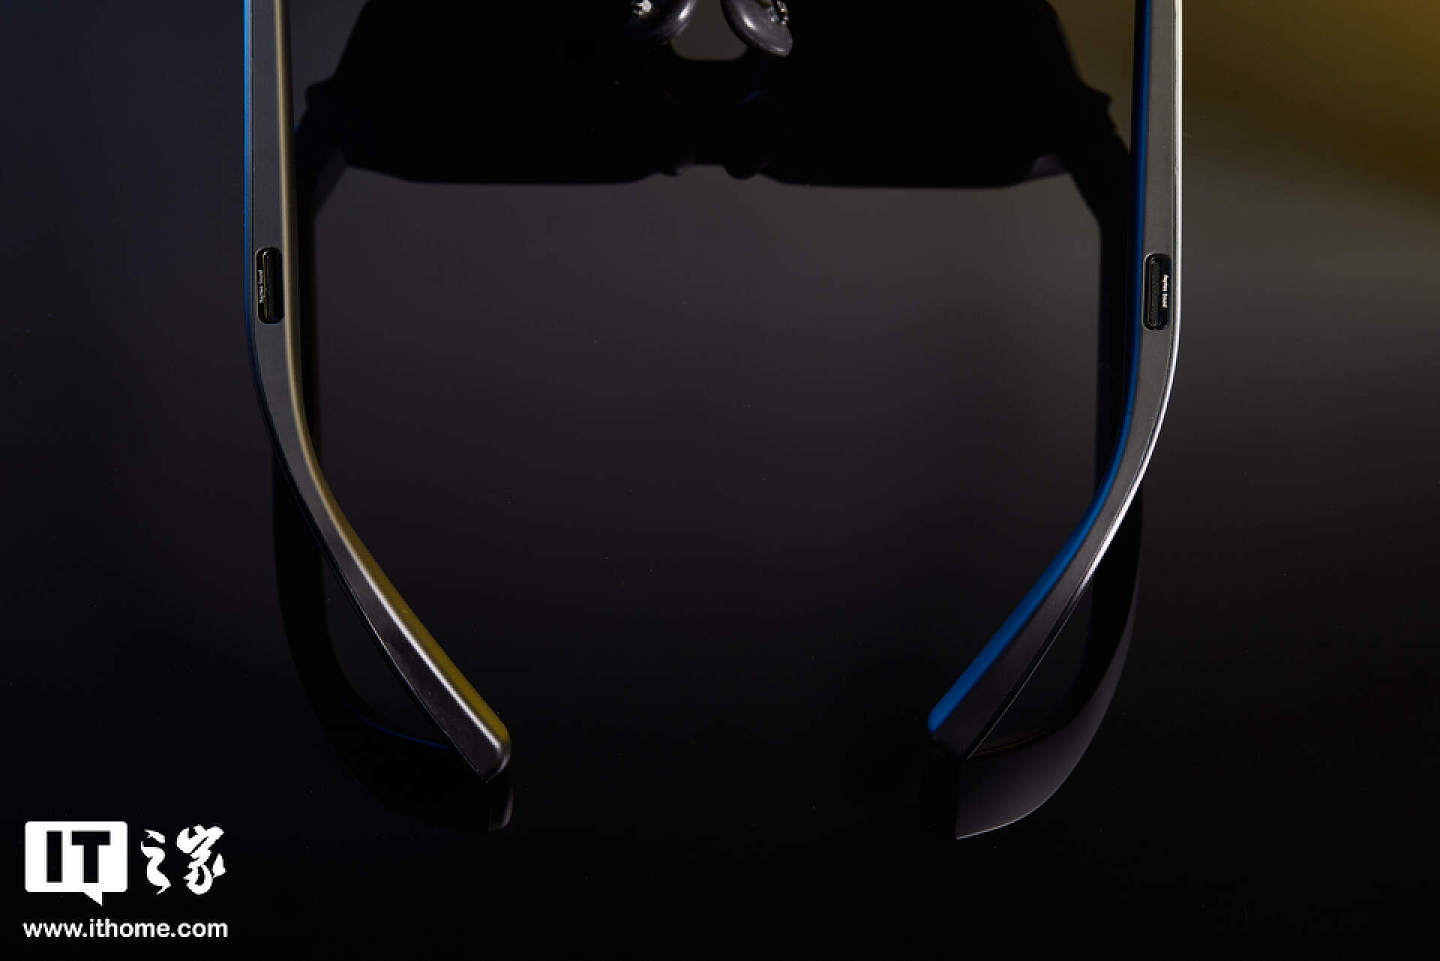 【IT之家开箱】201 英寸巨屏躺着看：雷鸟 Air 2s 智能眼镜图赏 - 6